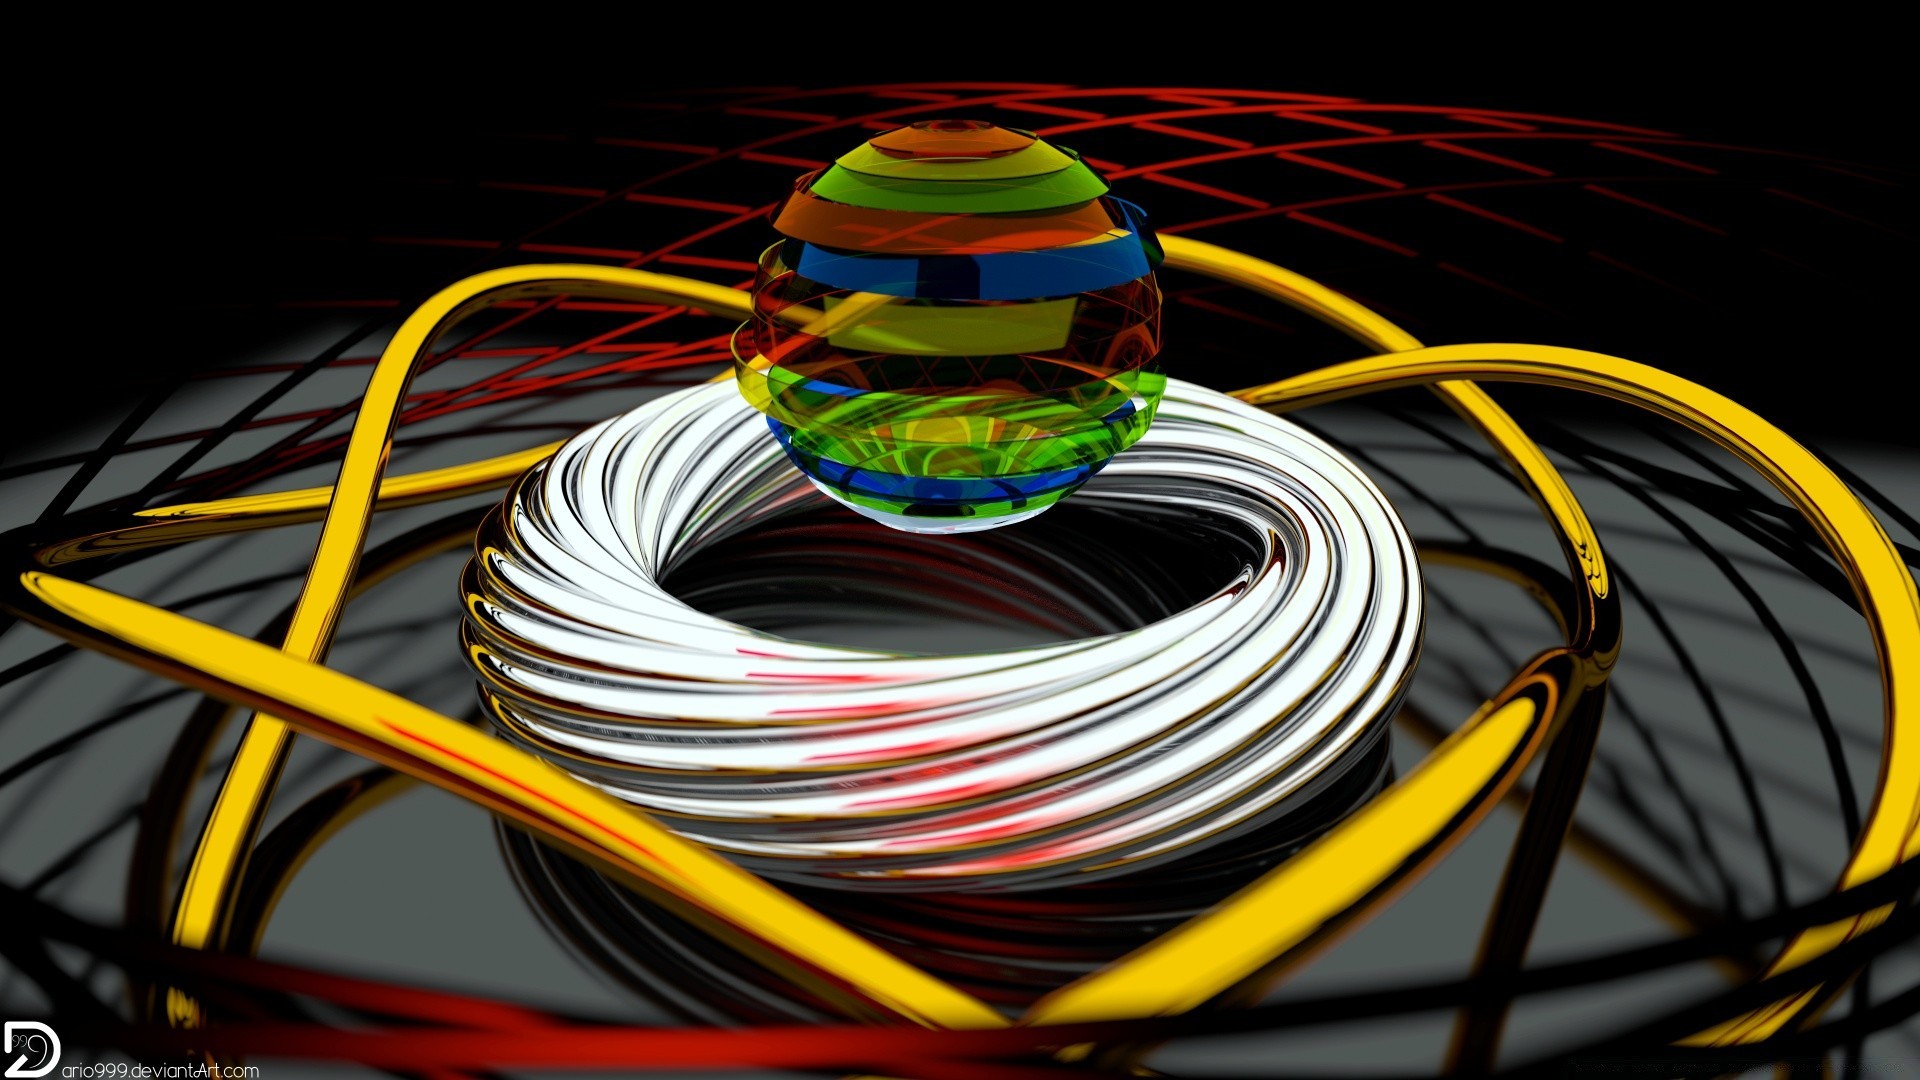 3d графика провода технология данные подключение интернет электроника компьютер сеть линия цвет аннотация техникум рабочего стола бизнес энергии мощность кривая